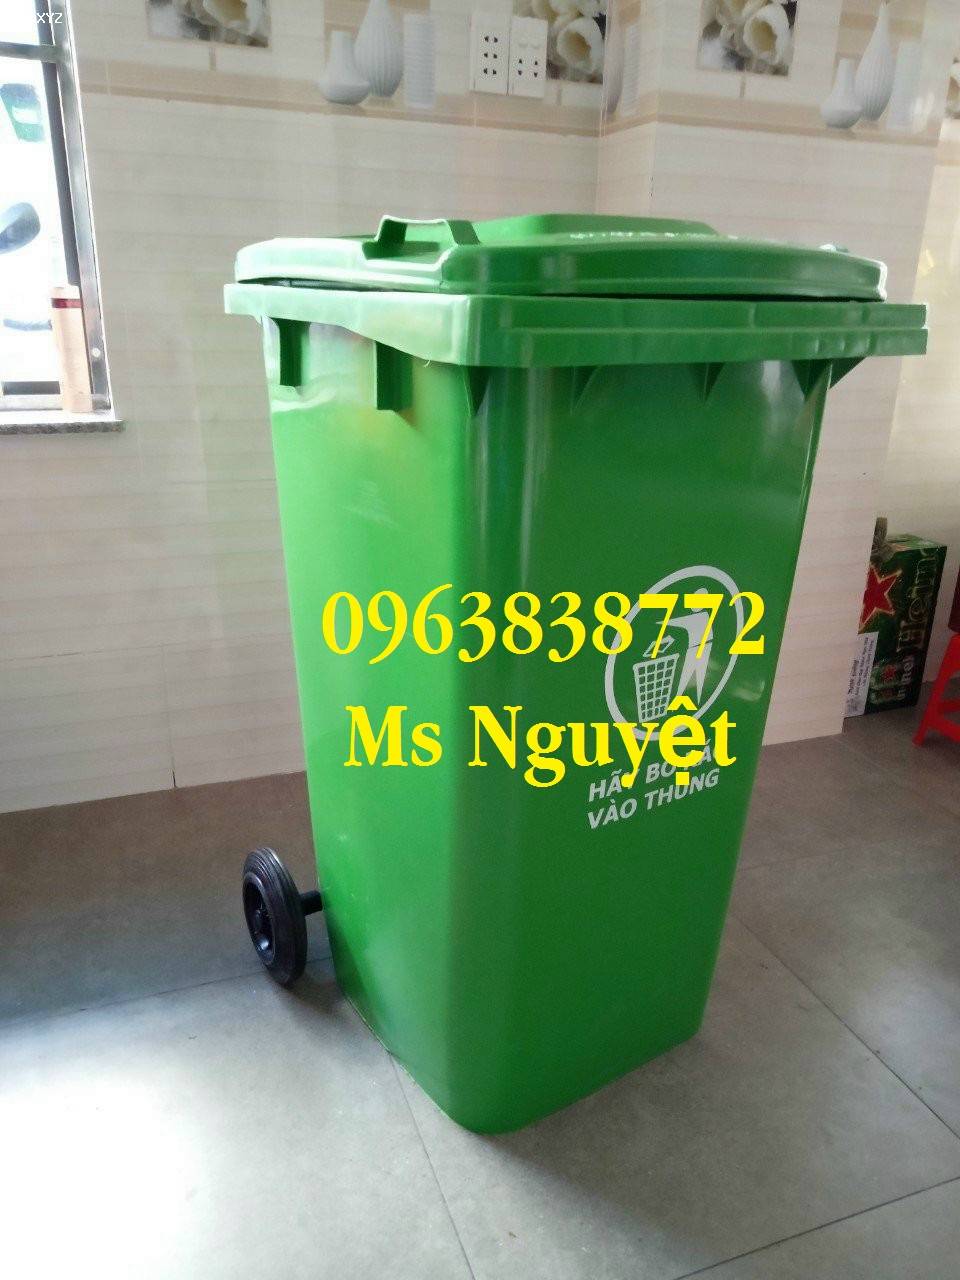 Tuyển đại lý phân phôi thùng rác nhựa toàn quố, giá siêu rẻ lh: 0963838772 Ms Nguyệt